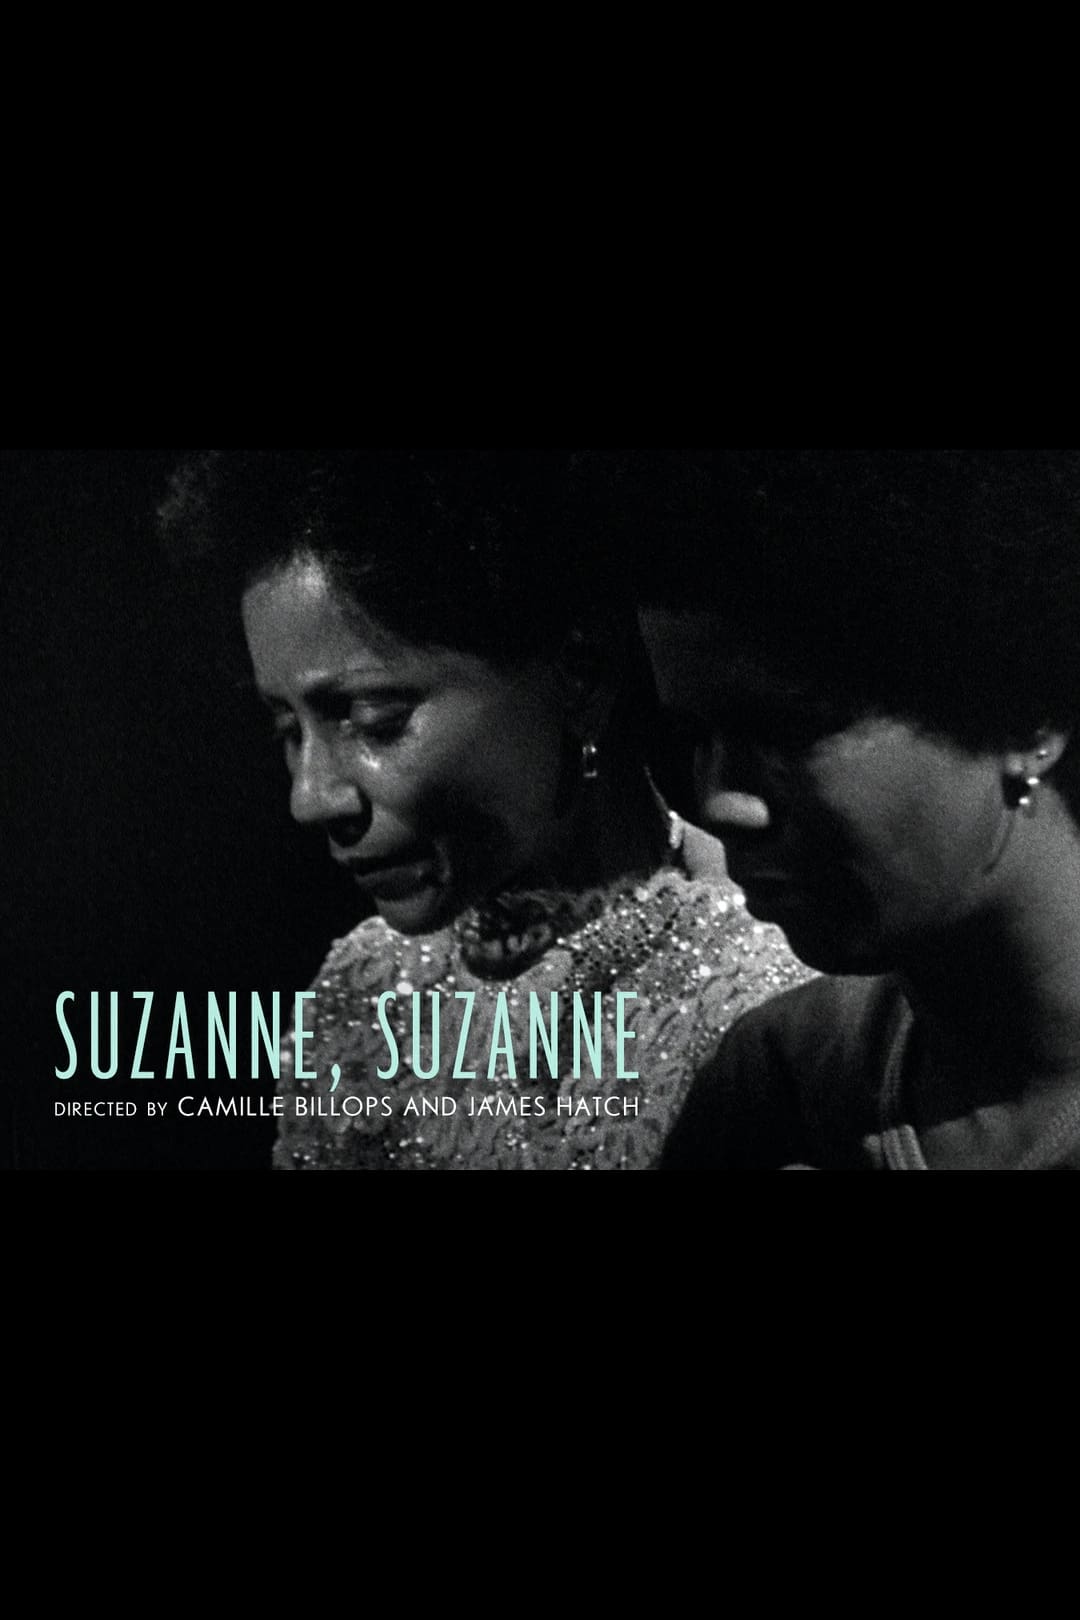 Suzanne, Suzanne